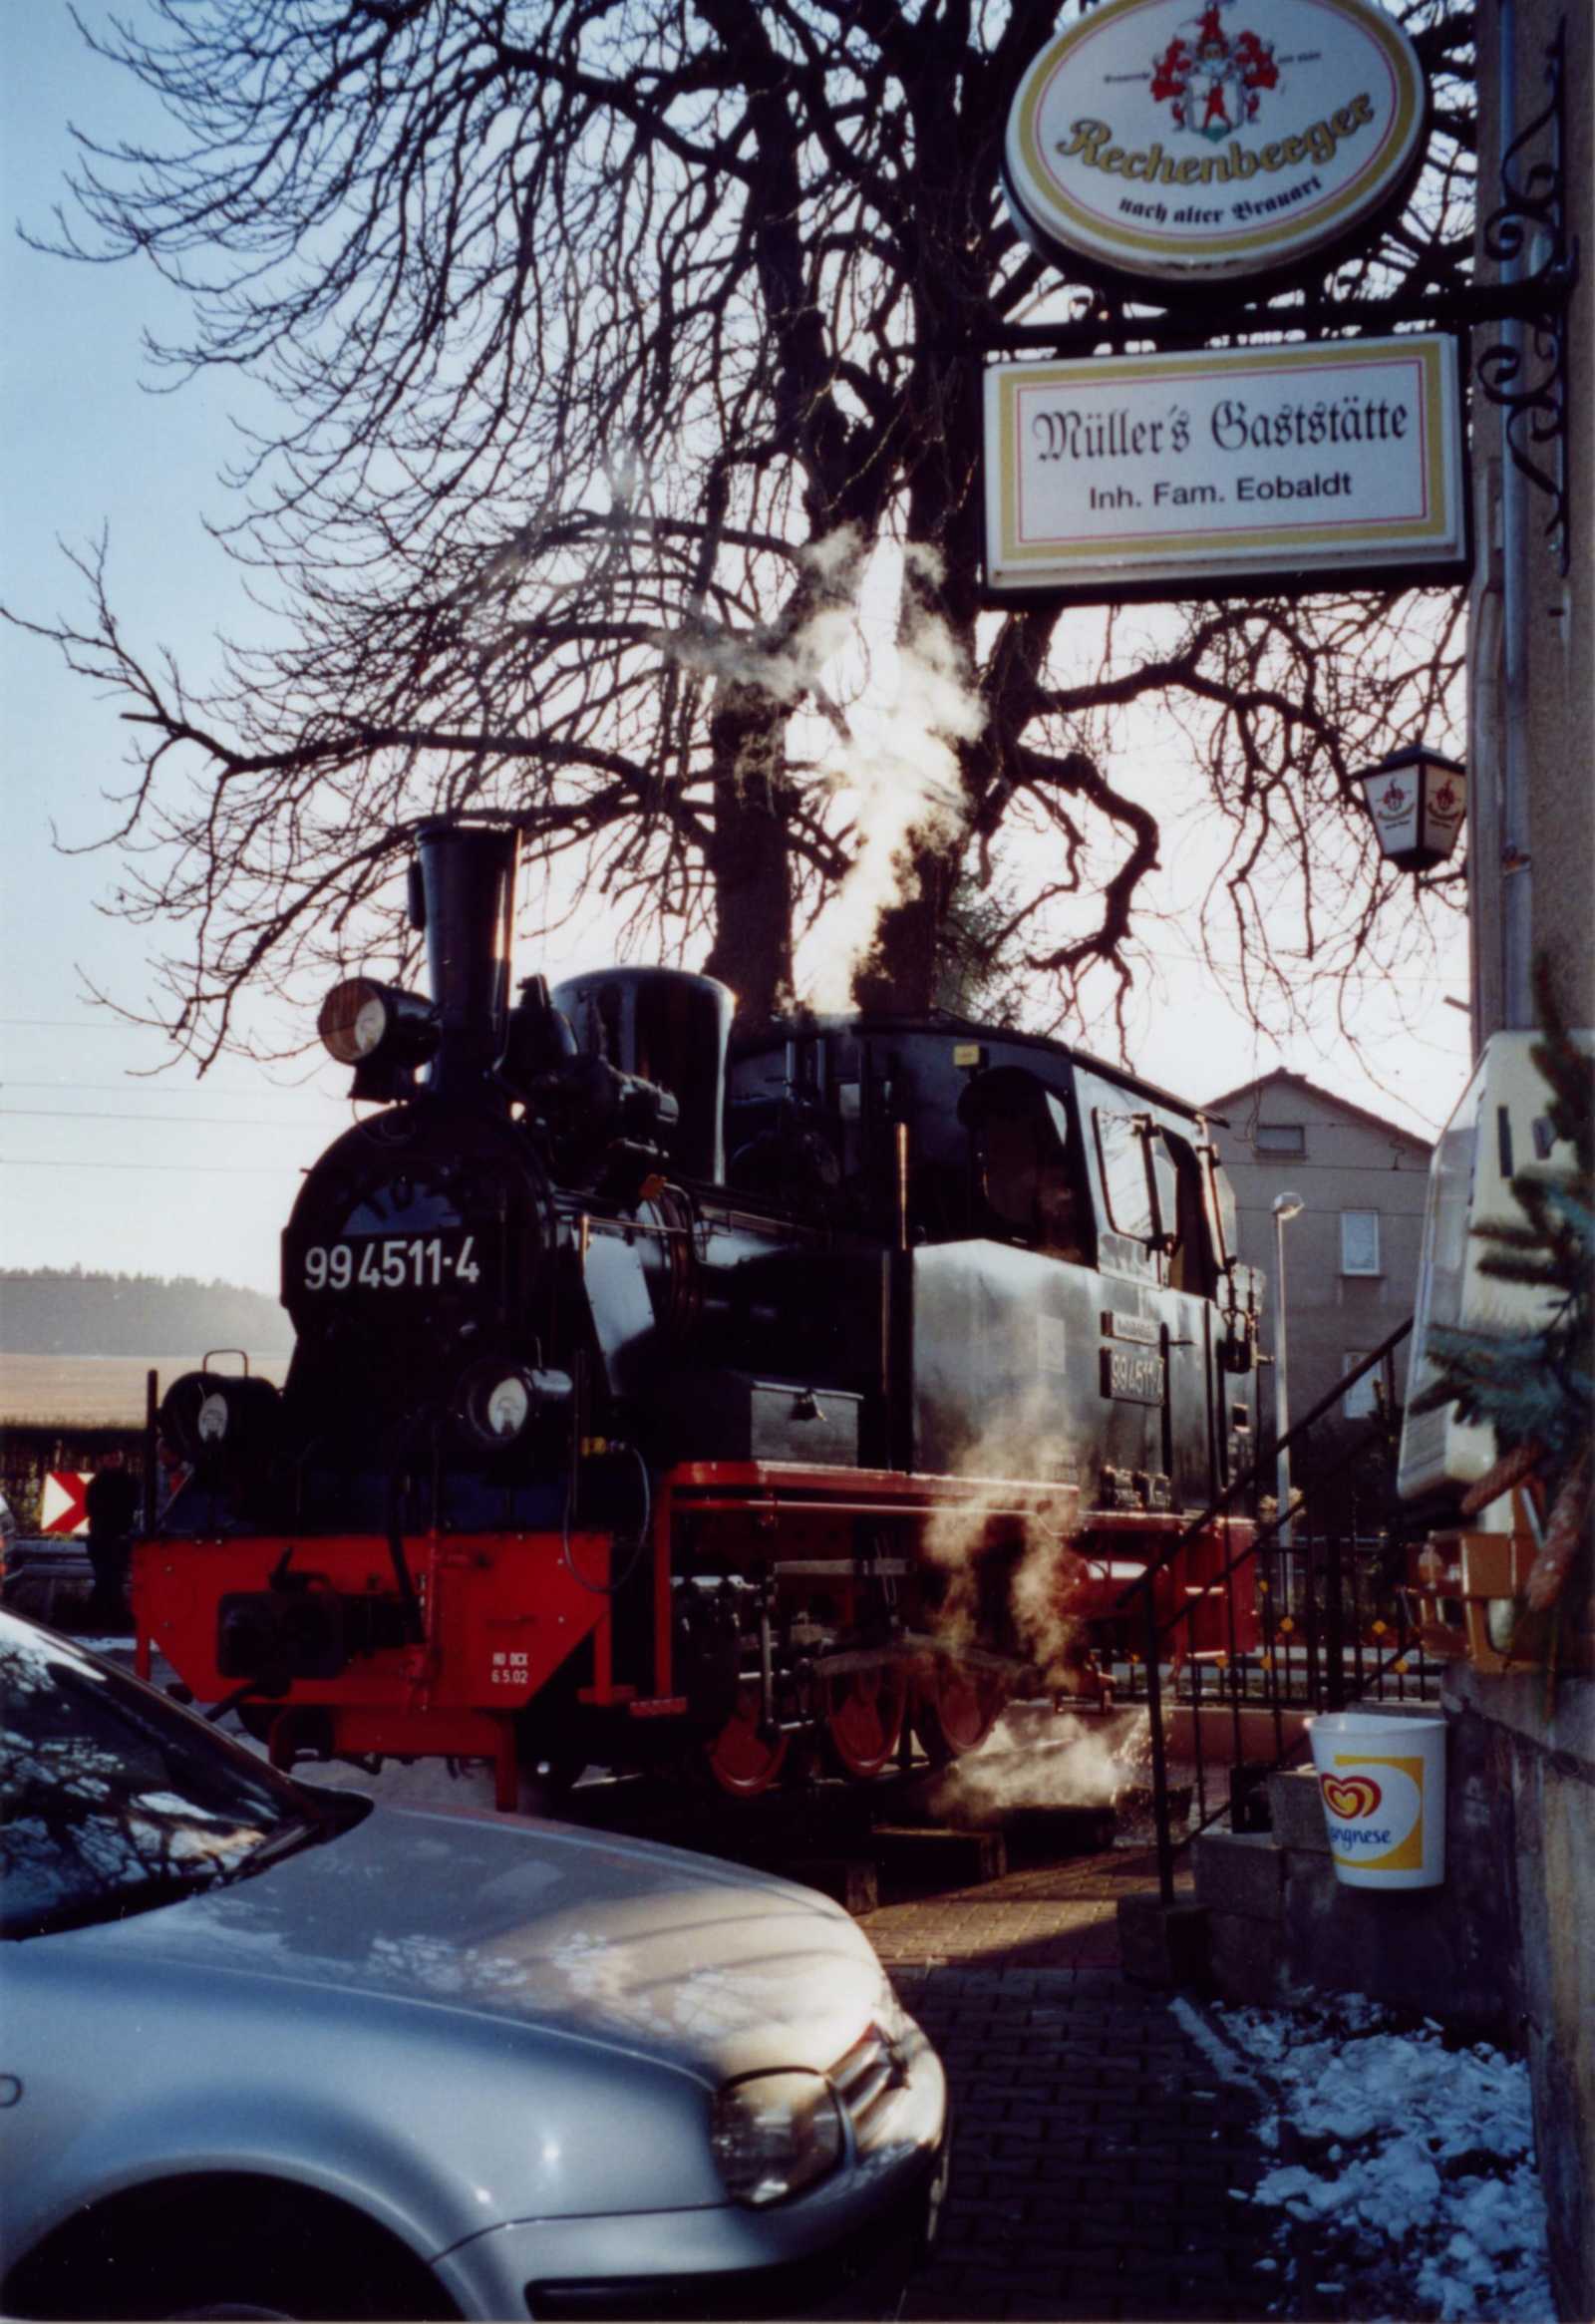 Rolf Eobaldt hatte maßgeblichen Anteil an der Wiederherstellung der 99 4511-4. Als Überraschung nach der offiziellen Verabschiedung in den Ruhestand und der abendlichen Feierlichkeit in „Müller’s Gaststätte“ wurde die Dampflok vor dem Eingang aufgestellt.